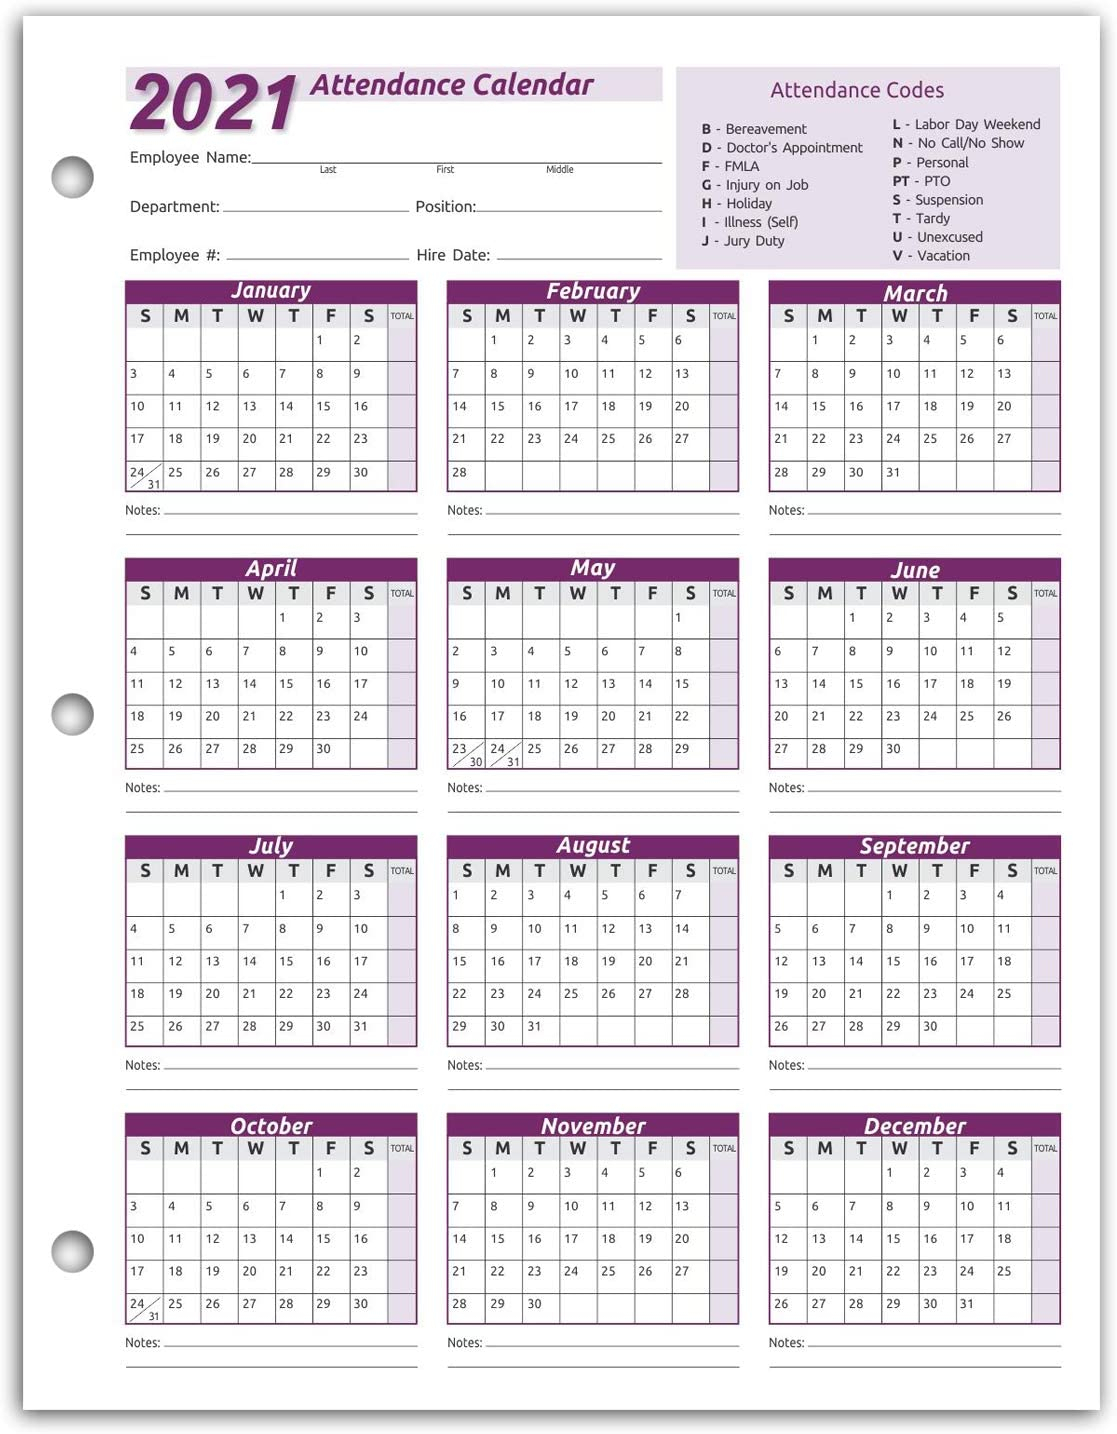 2021 Employee Attendance Calendar - Calendar 2021